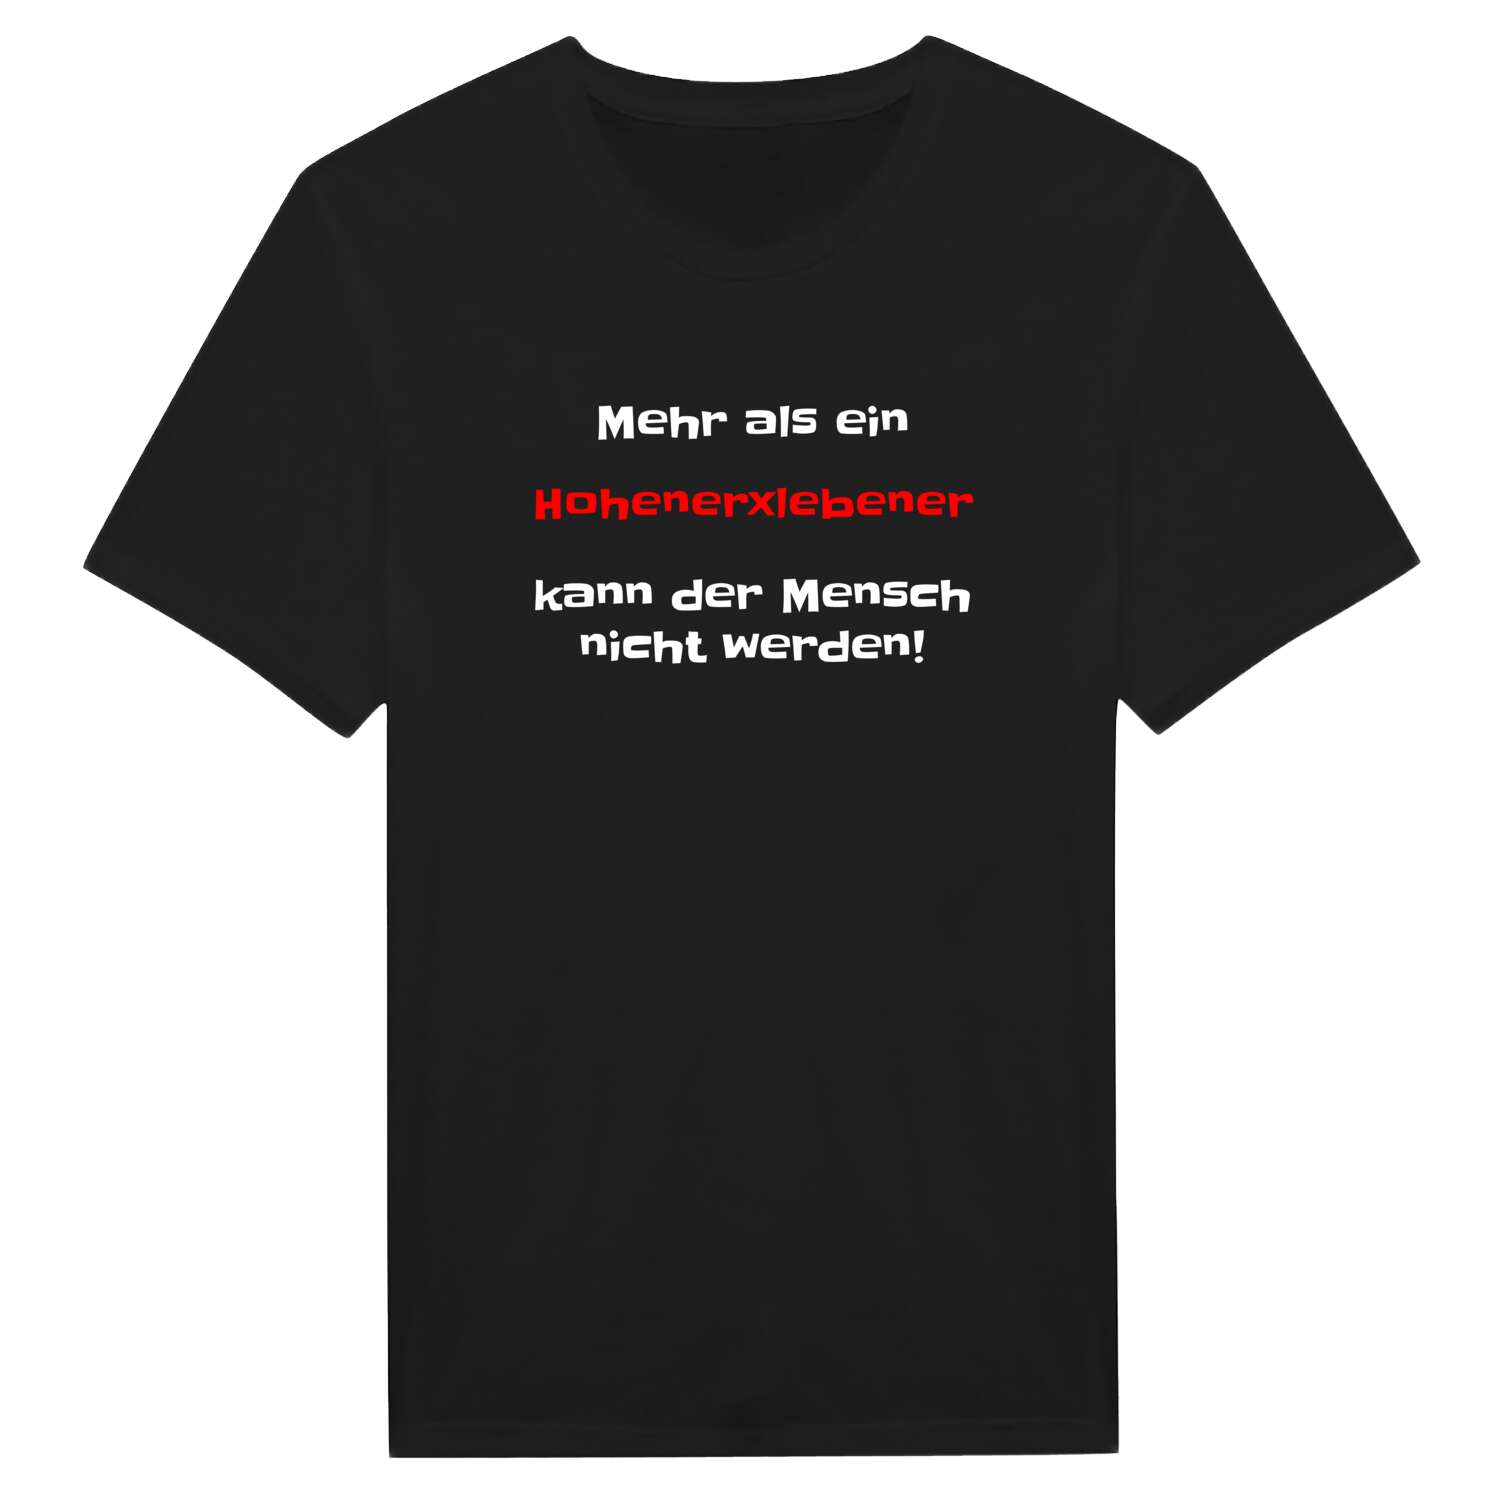 Hohenerxleben T-Shirt »Mehr als ein«